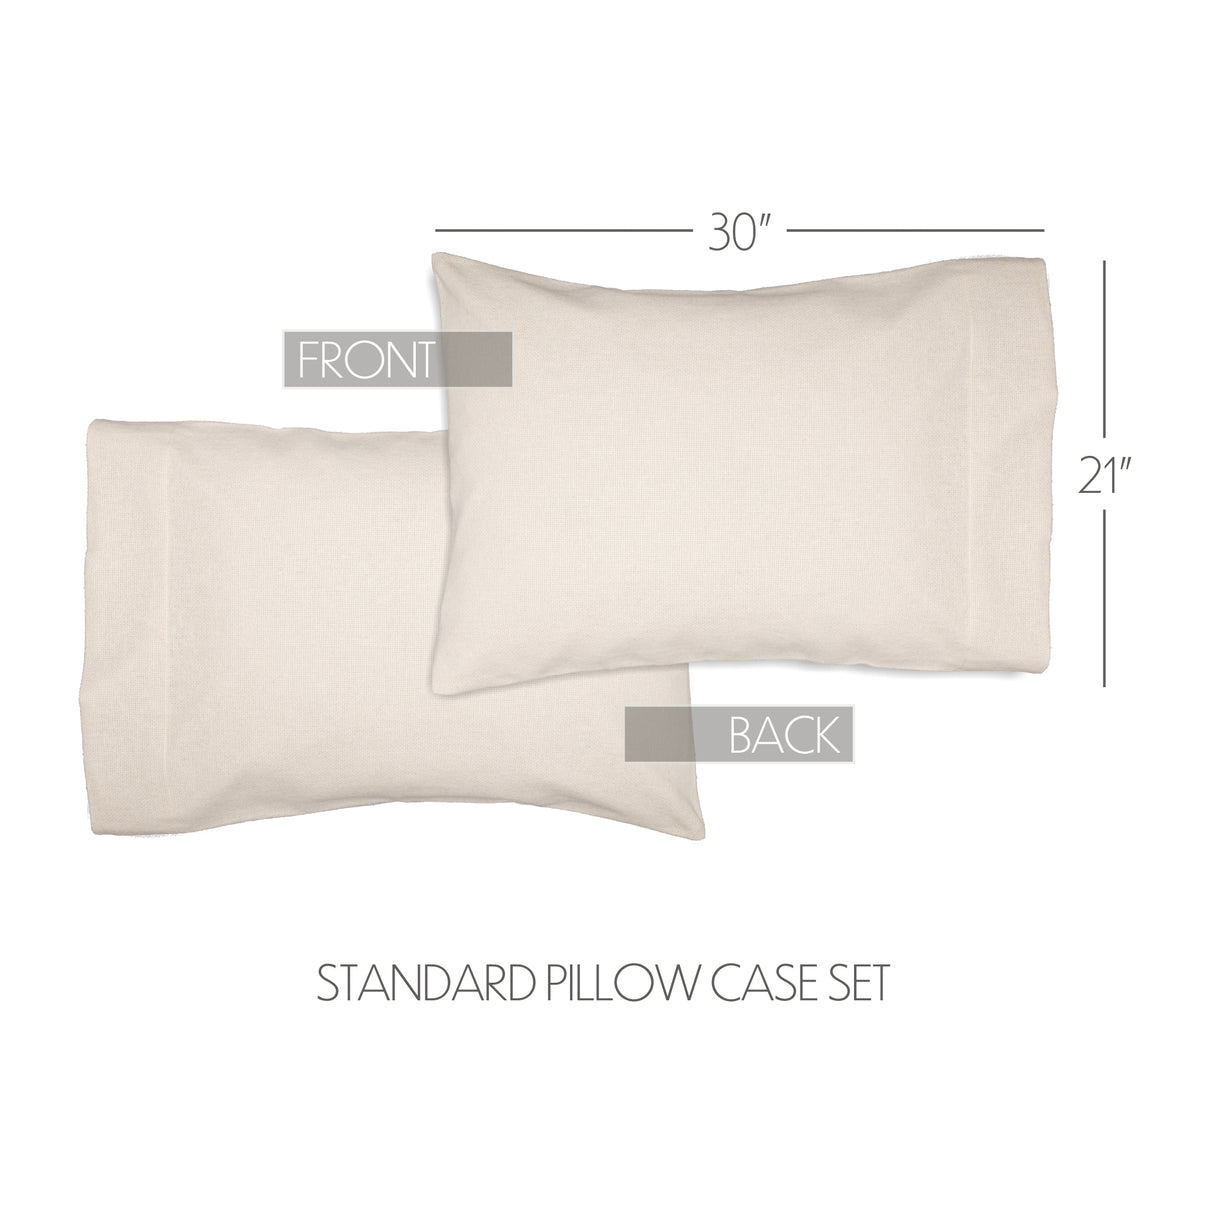 51812-Burlap-Antique-White-Standard-Pillow-Case-Set-of-2-21x30-image-1